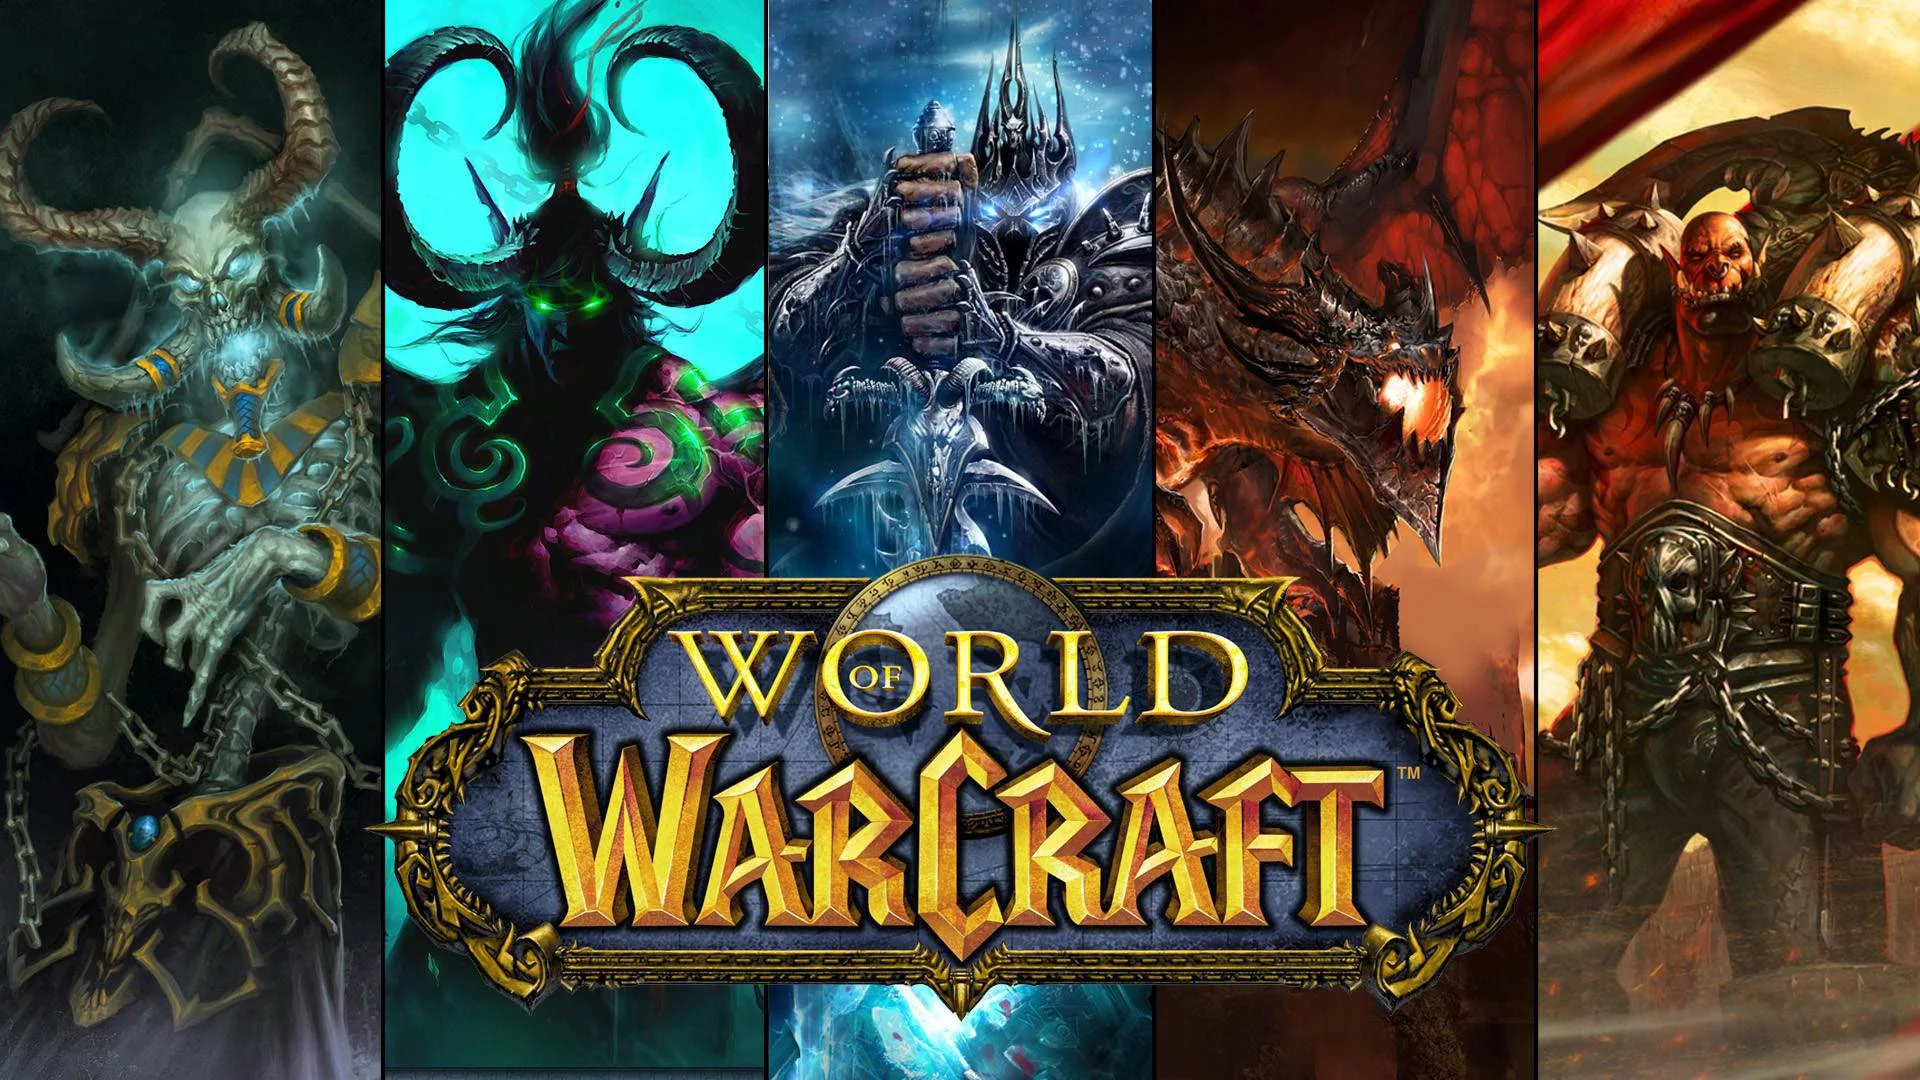 Последние два года в World of Warcraft я почти не играю. Смотрю новый контент и ухожу. Но когда-то все было иначе. Только на одном из двенадцати персонажей у меня отыграно  три сотни полных земных суток. То есть почти год своей жизни я провел в виртуальном мире. И сейчас жалею о потраченном впустую времени.